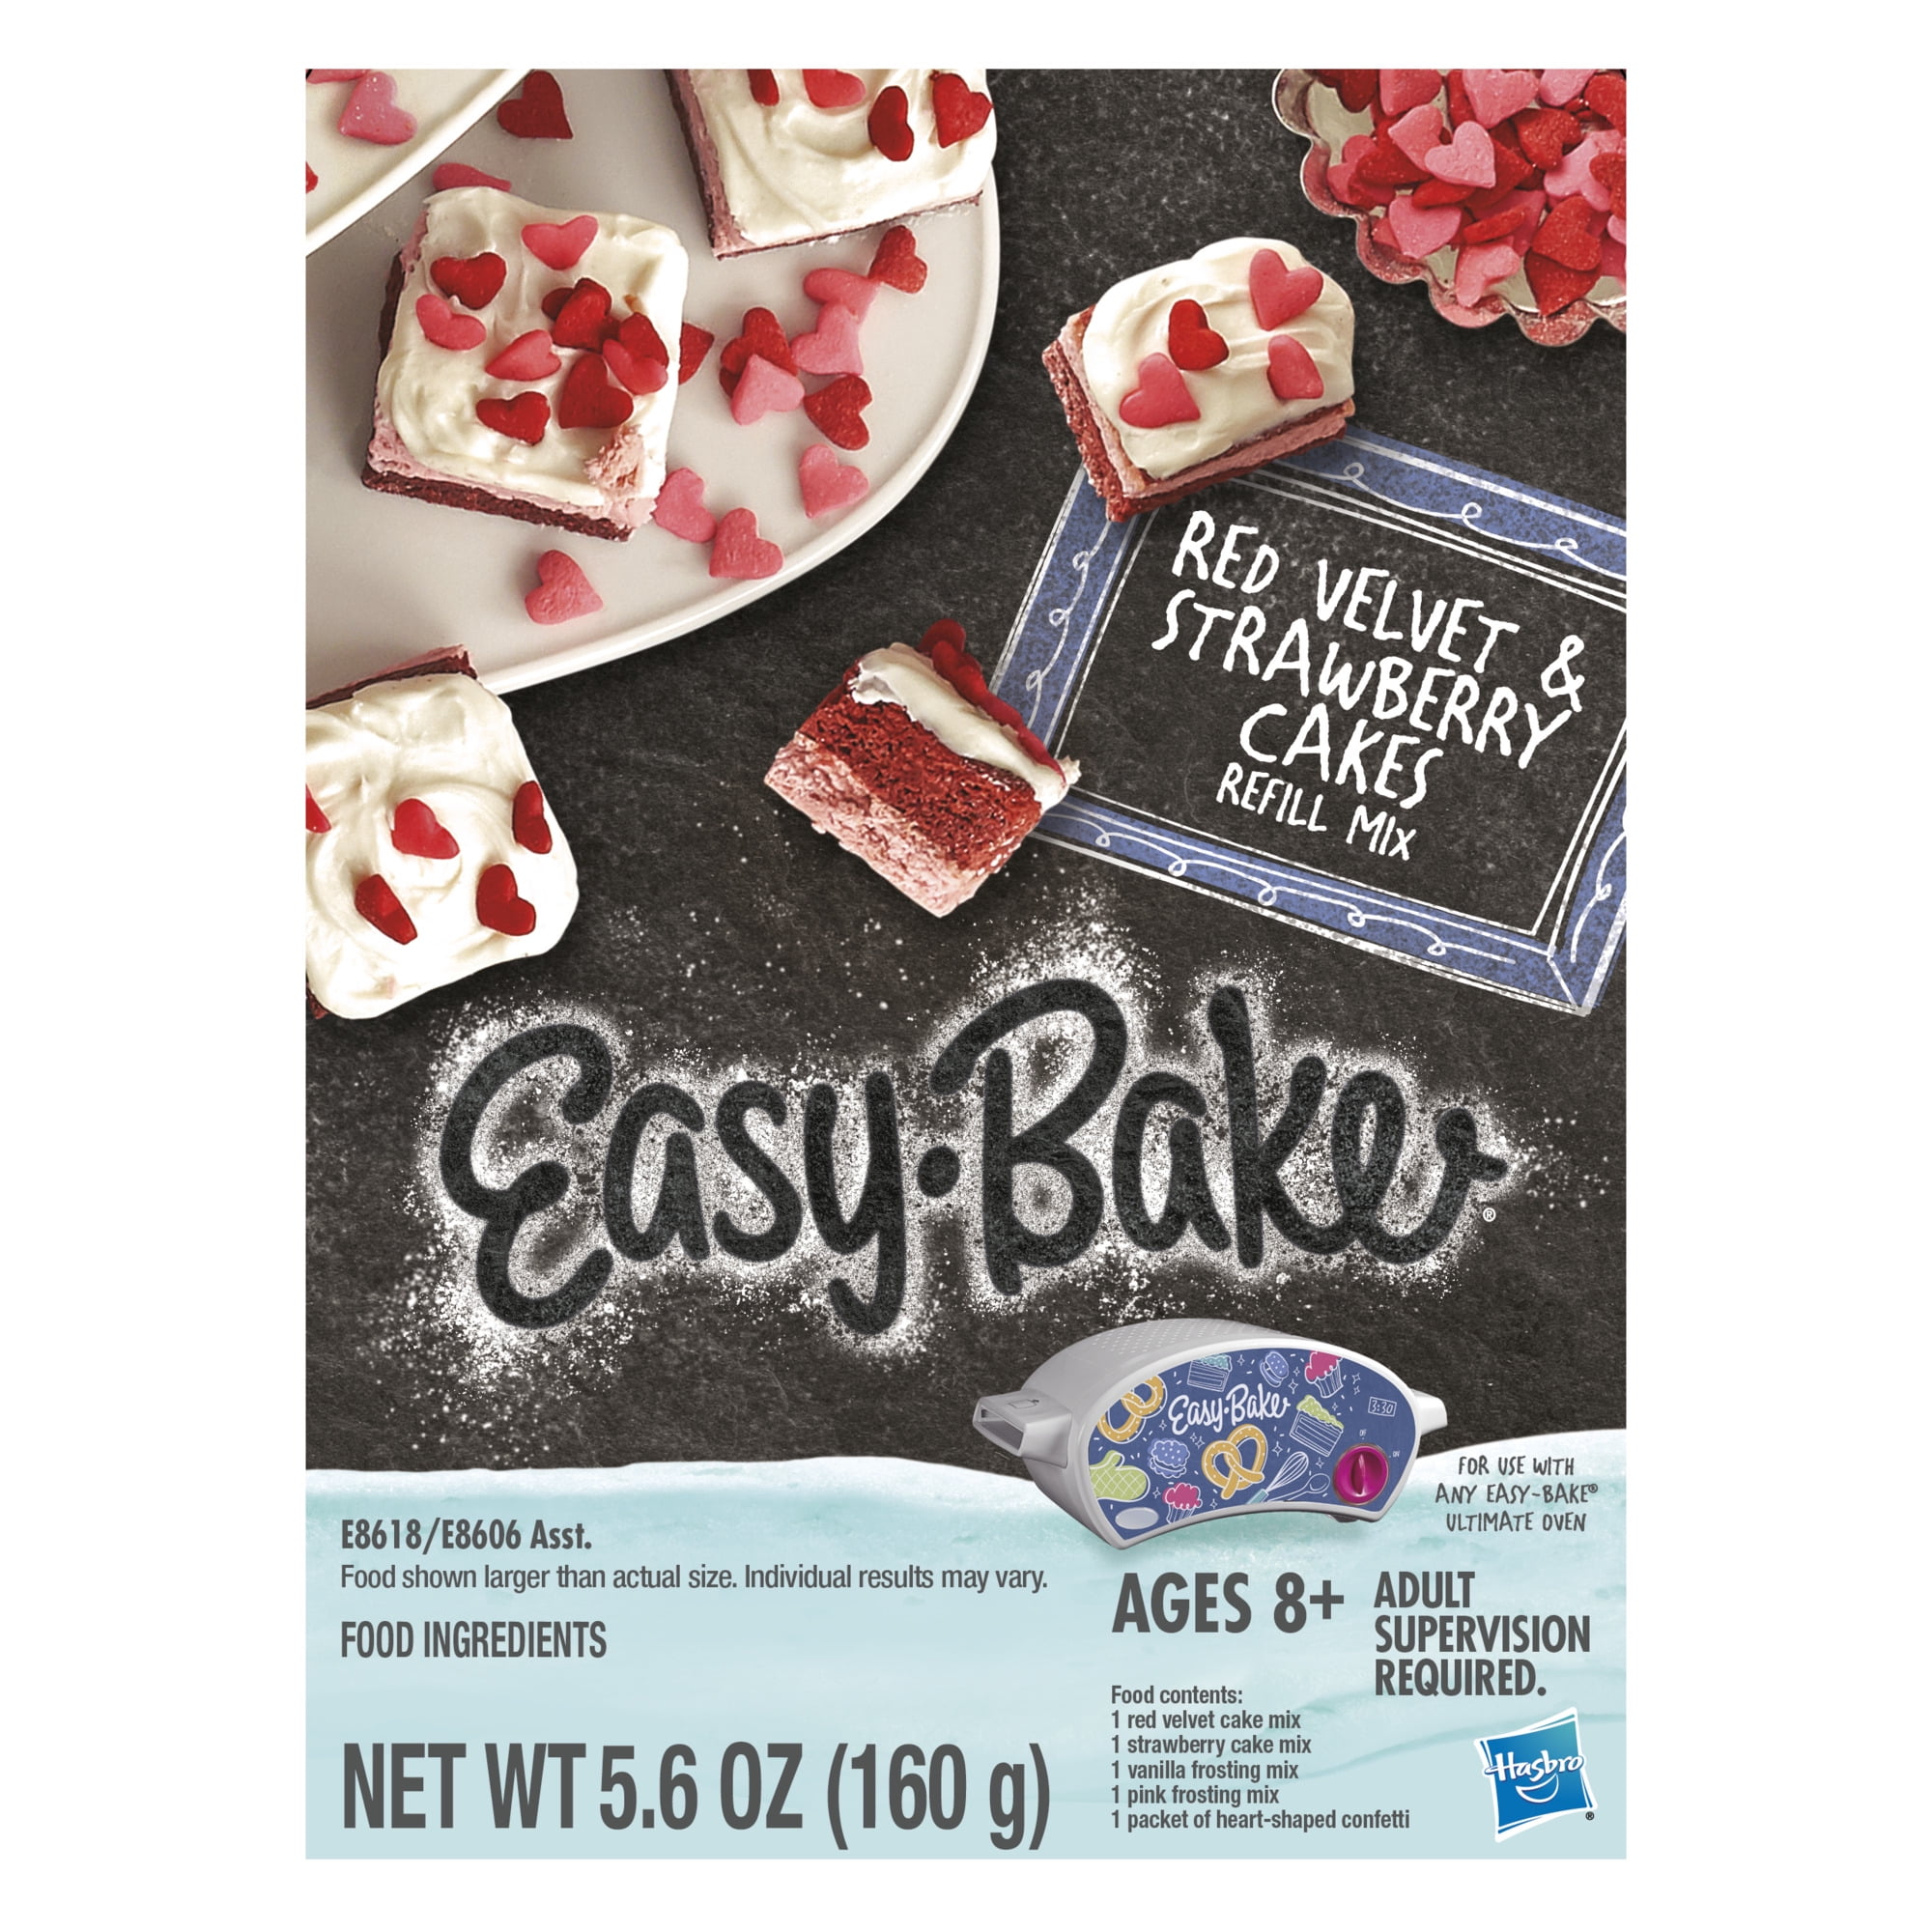 Easy-Bake Ultimate Oven Red Velvet & Strawberry Cakes Refill Mix Pack 5.6 oz 